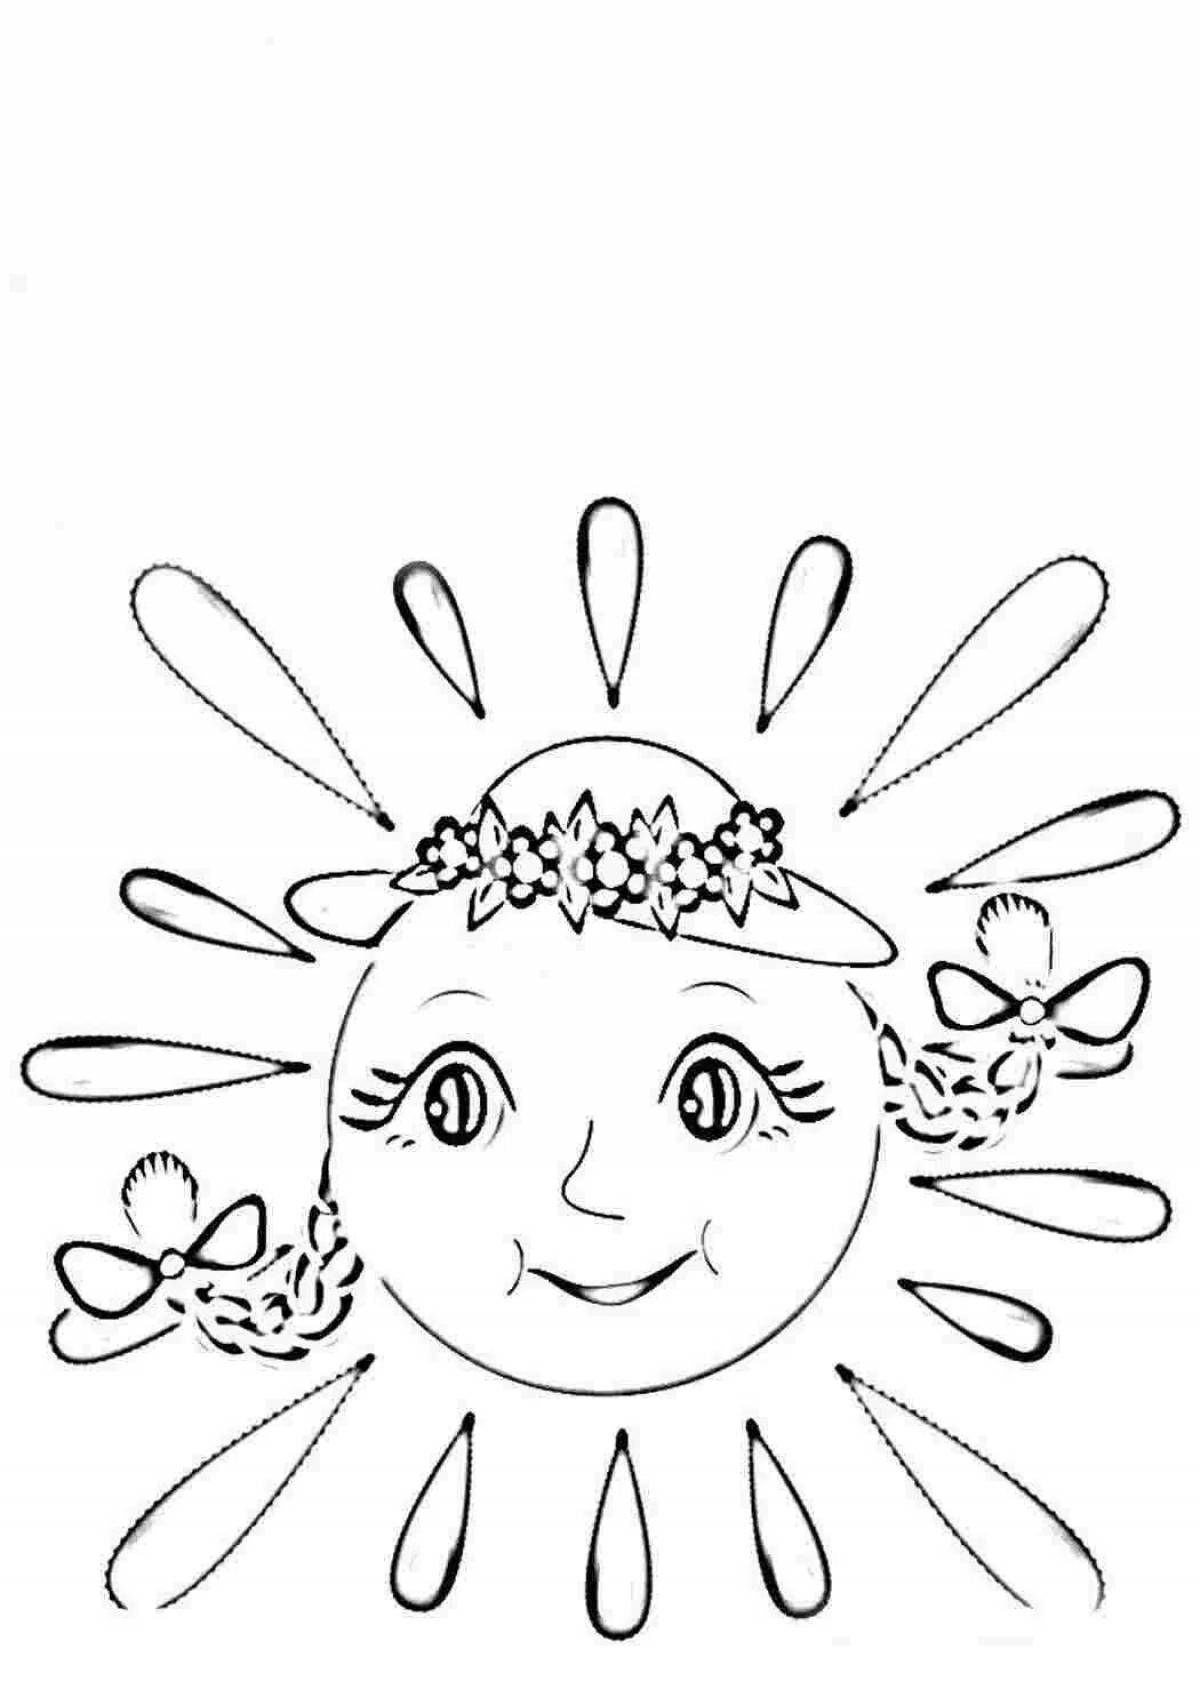 Красочная раскраска солнышко для детей